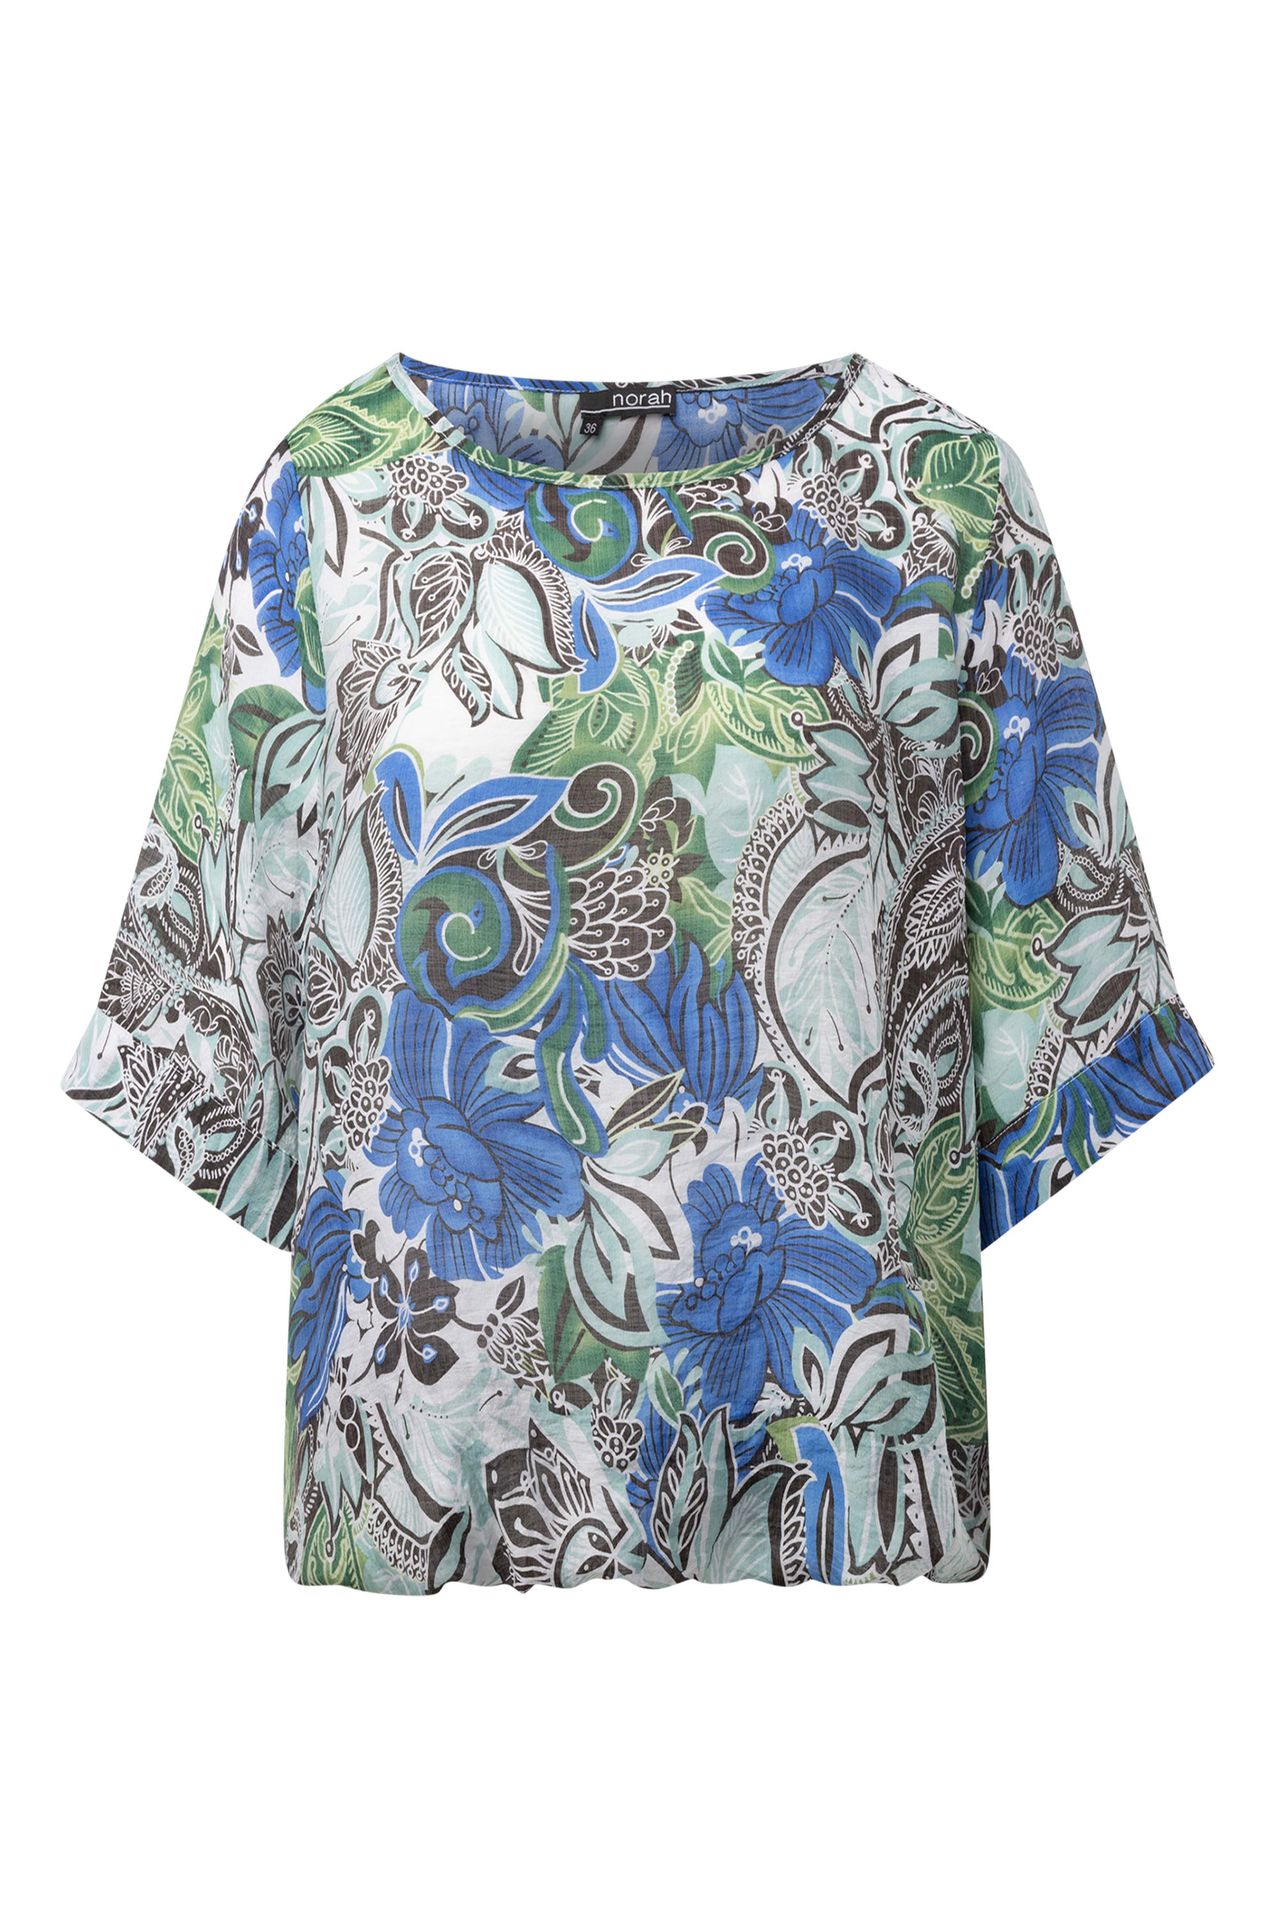 Norah Groene blouse green melange 214793-550